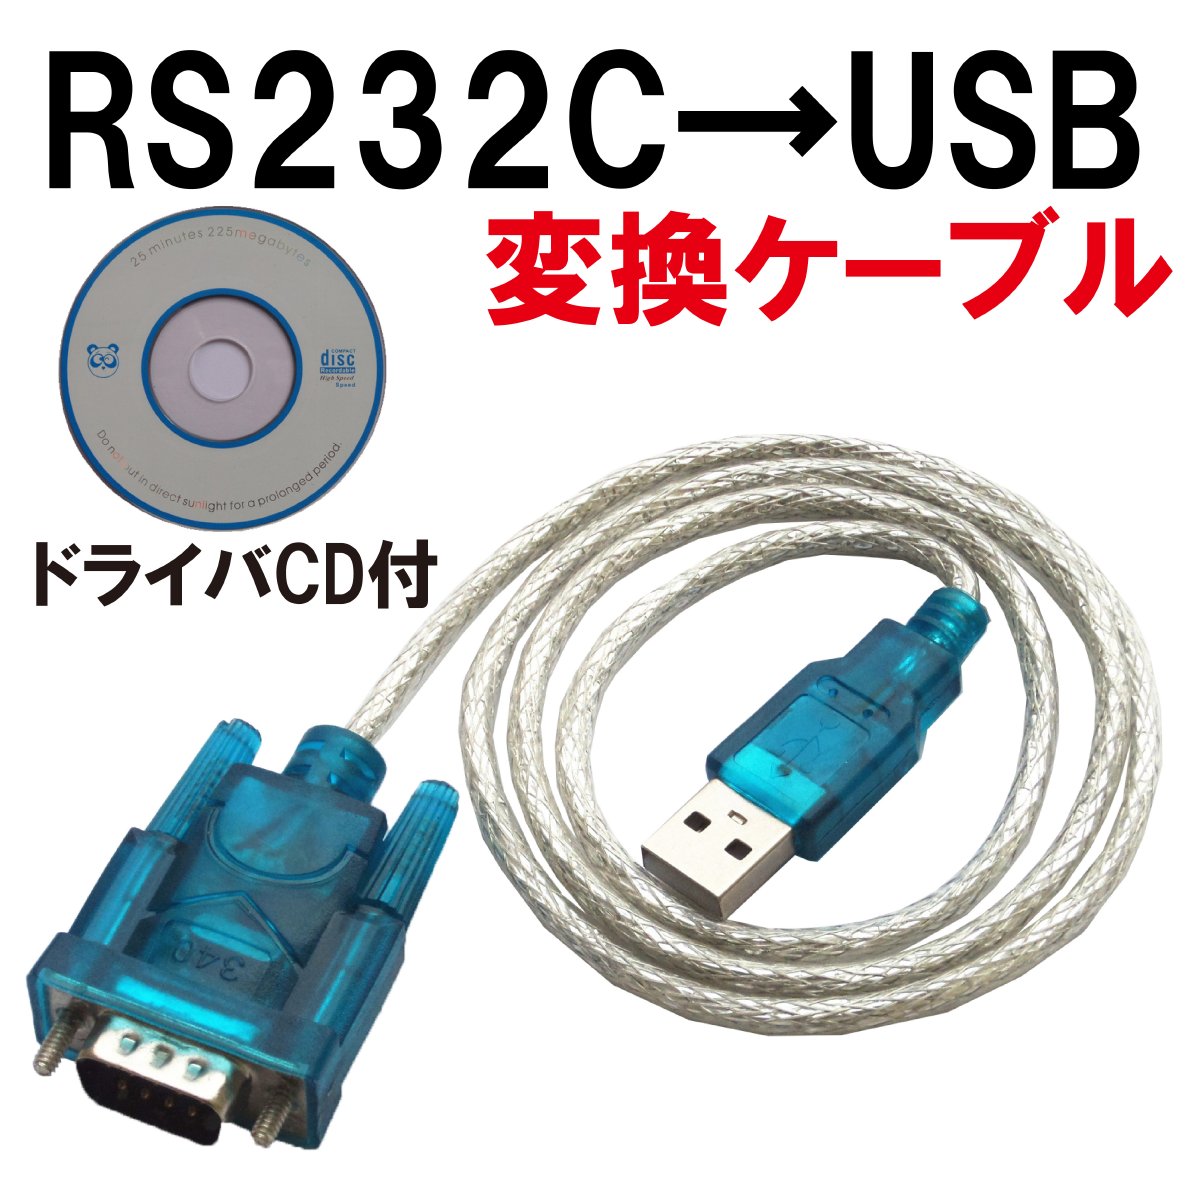 USB RS232C シリアル 変換 ケーブル D-SUB9ピン 80cm 動作テスト済